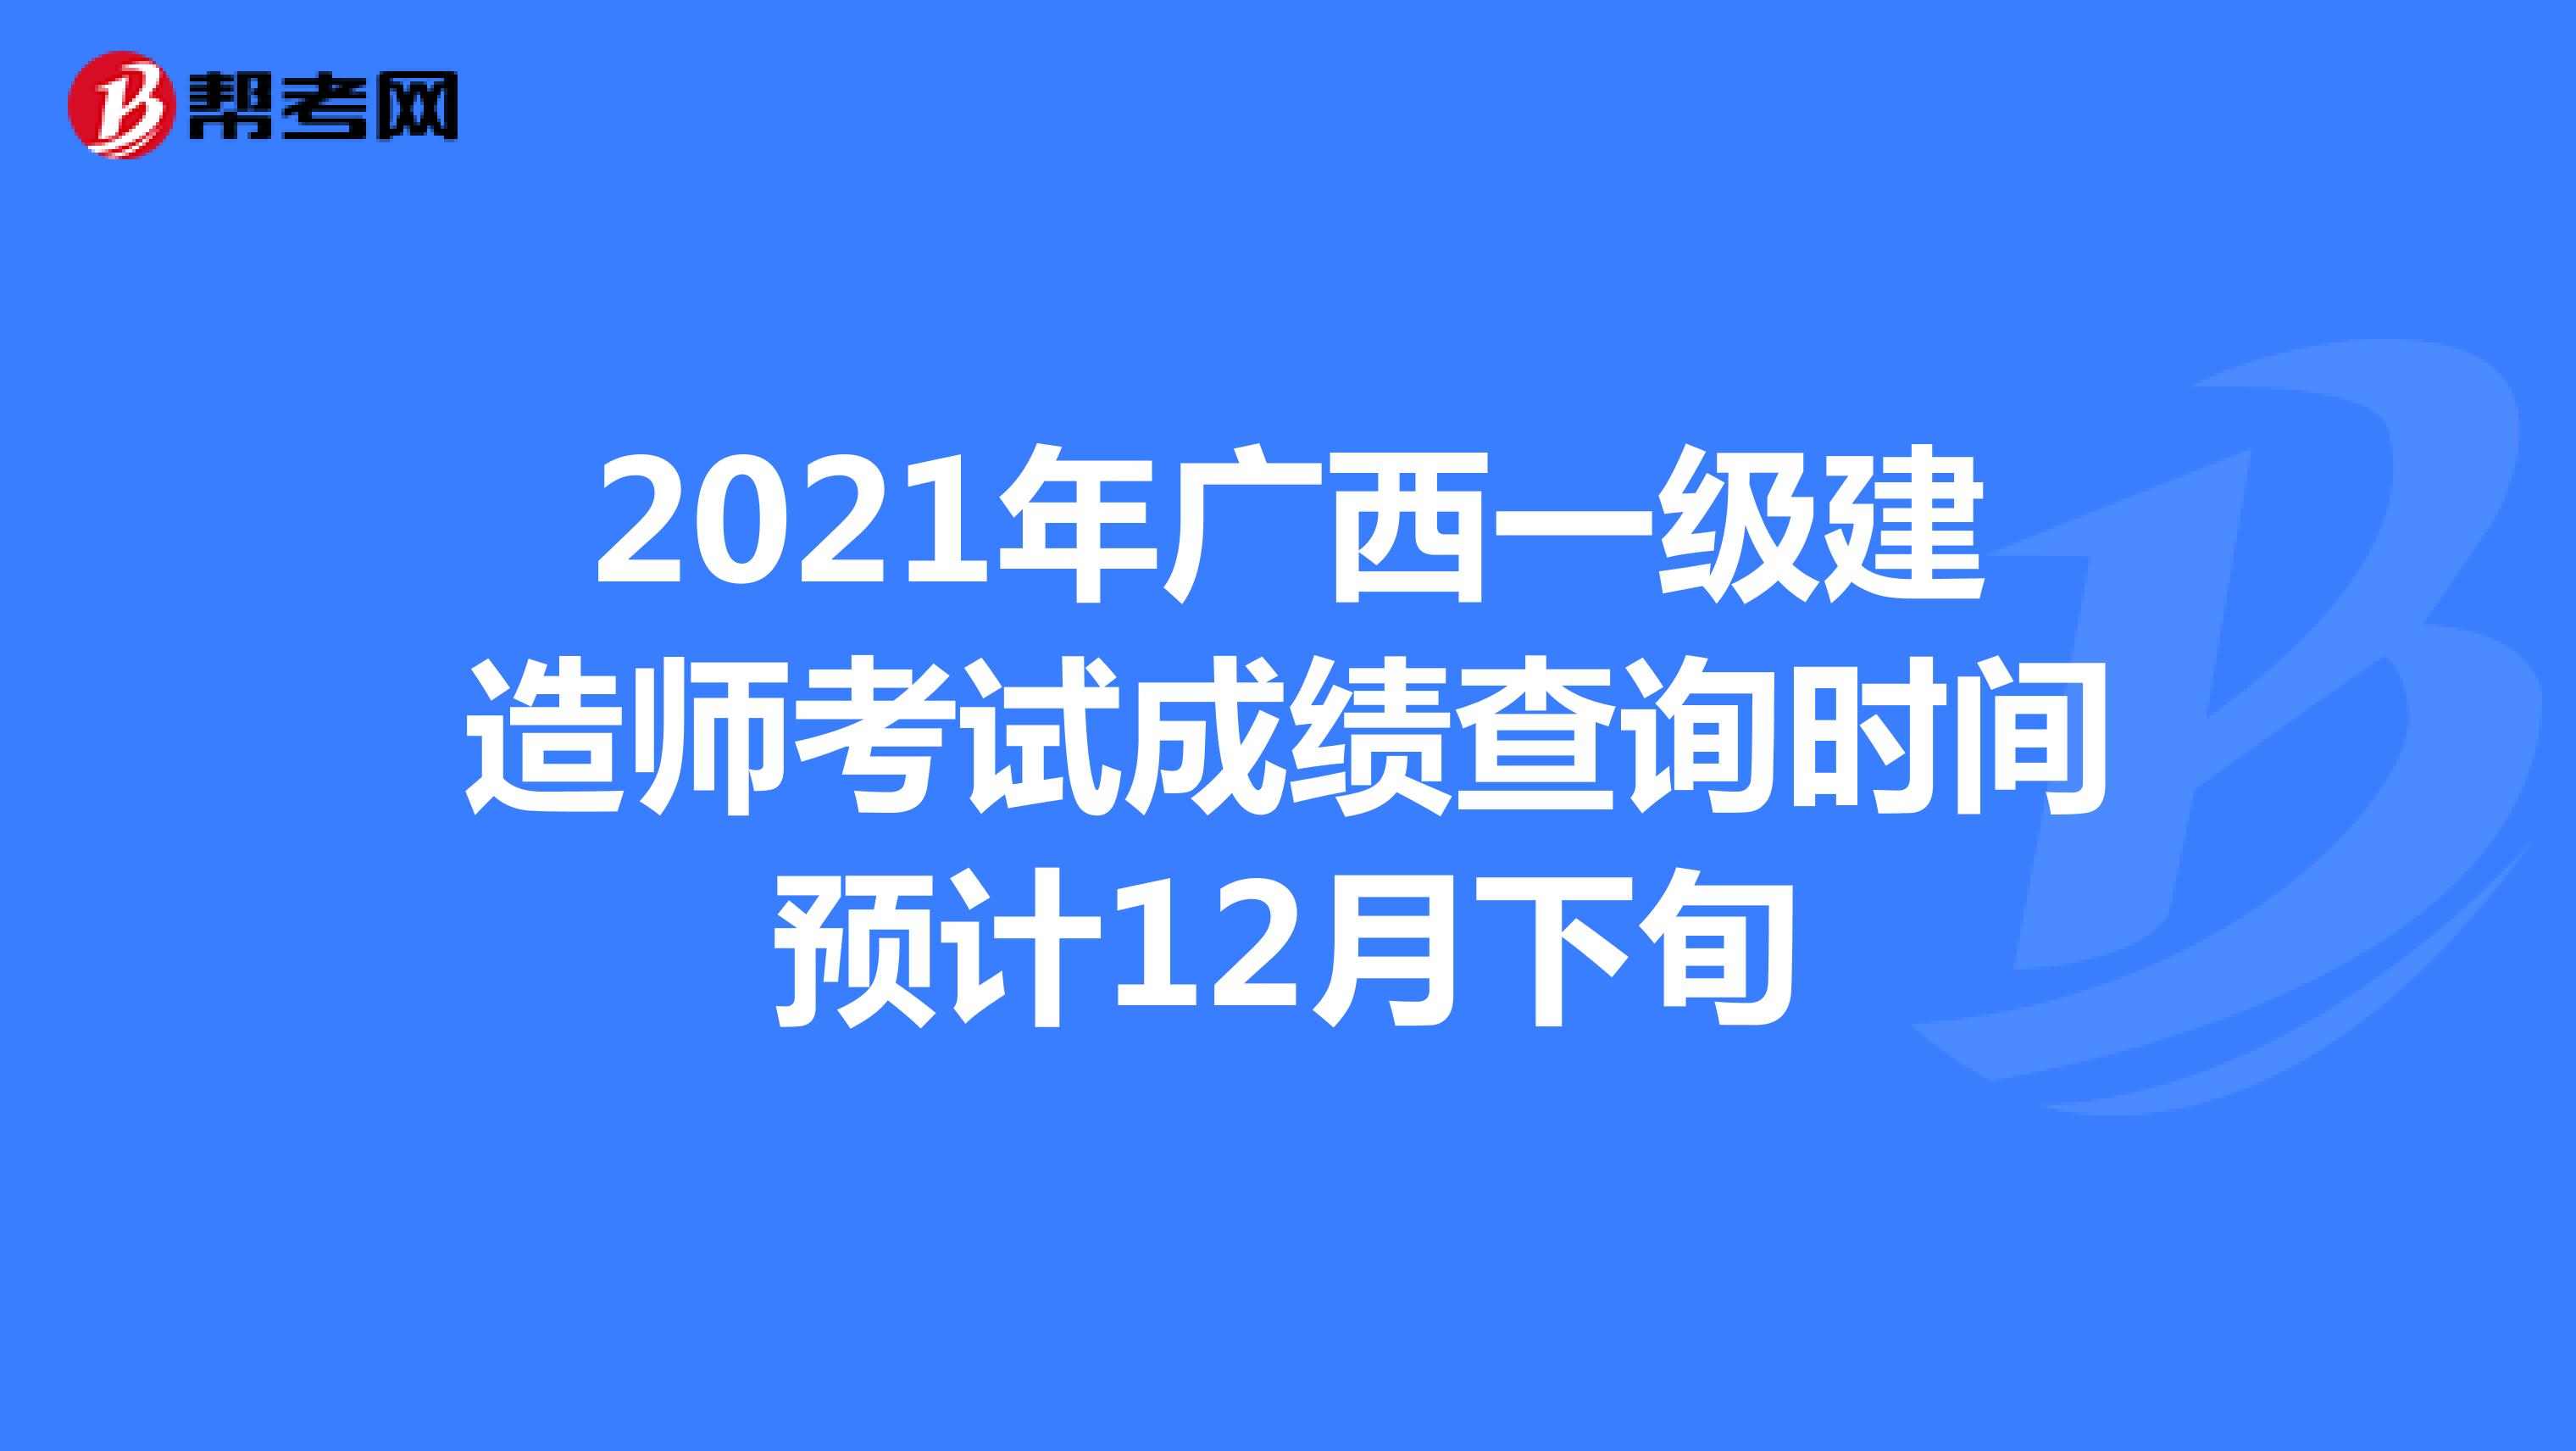 2021年广西一级建造师考试成绩查询时间预计12月下旬